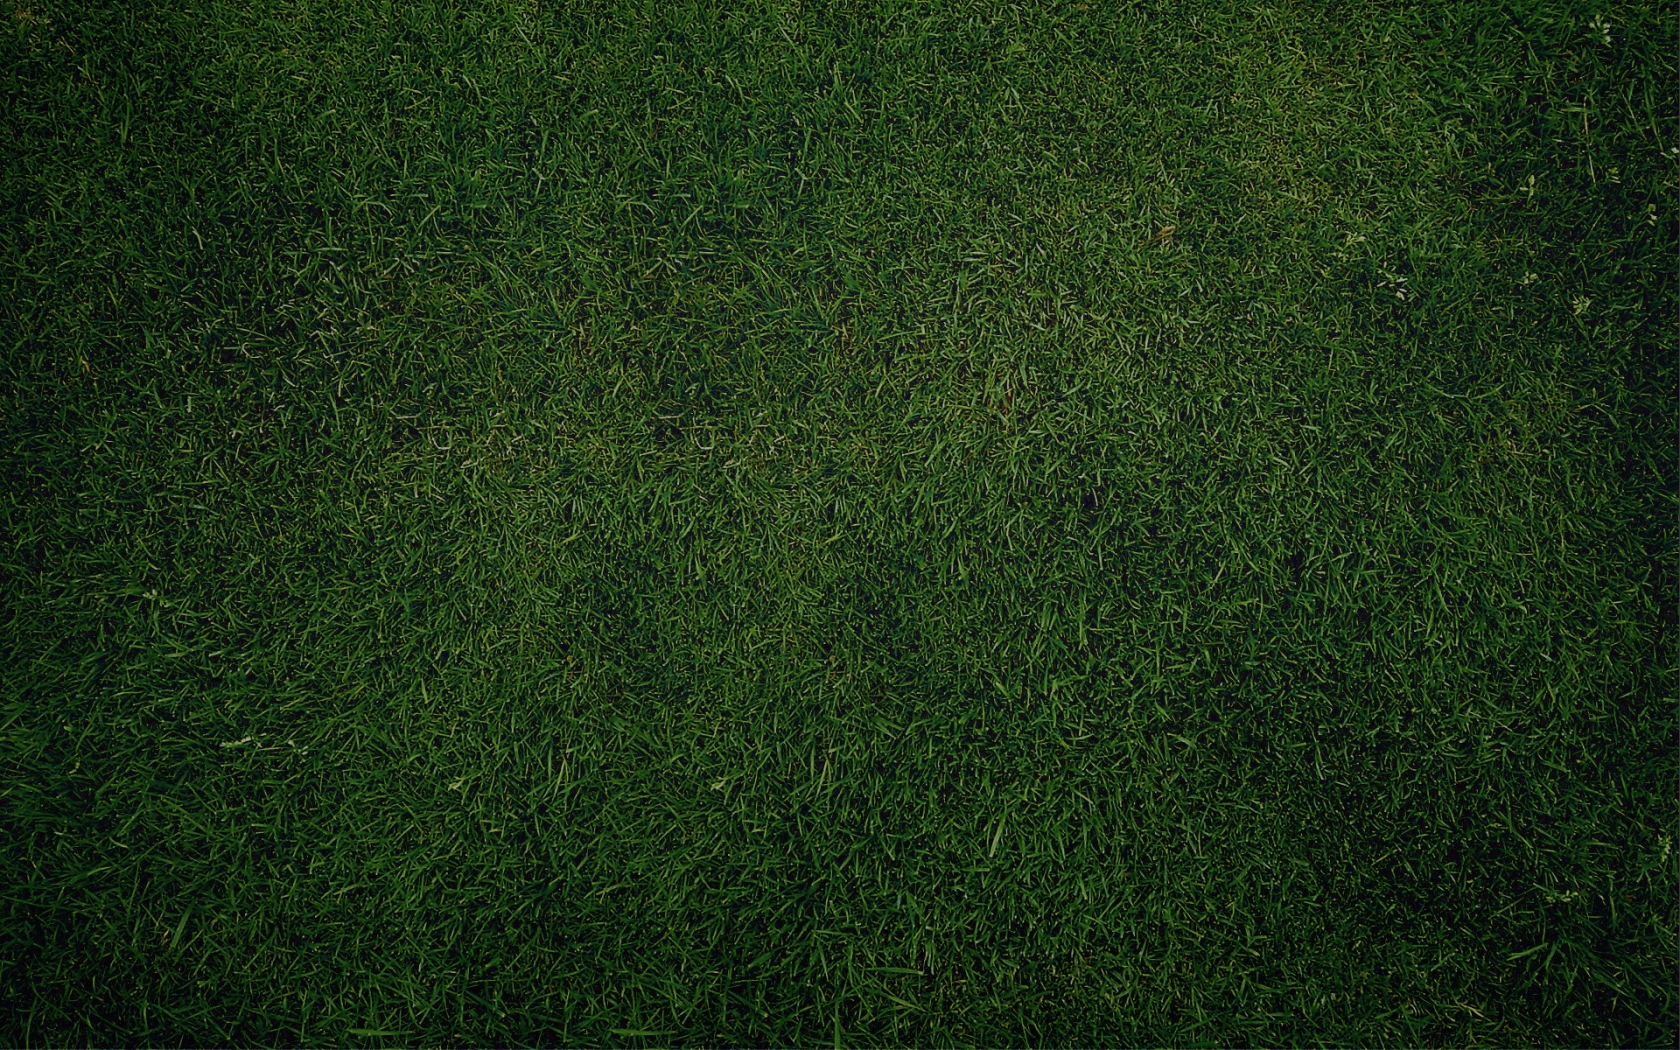 Green Grass for 1680 x 1050 widescreen resolution